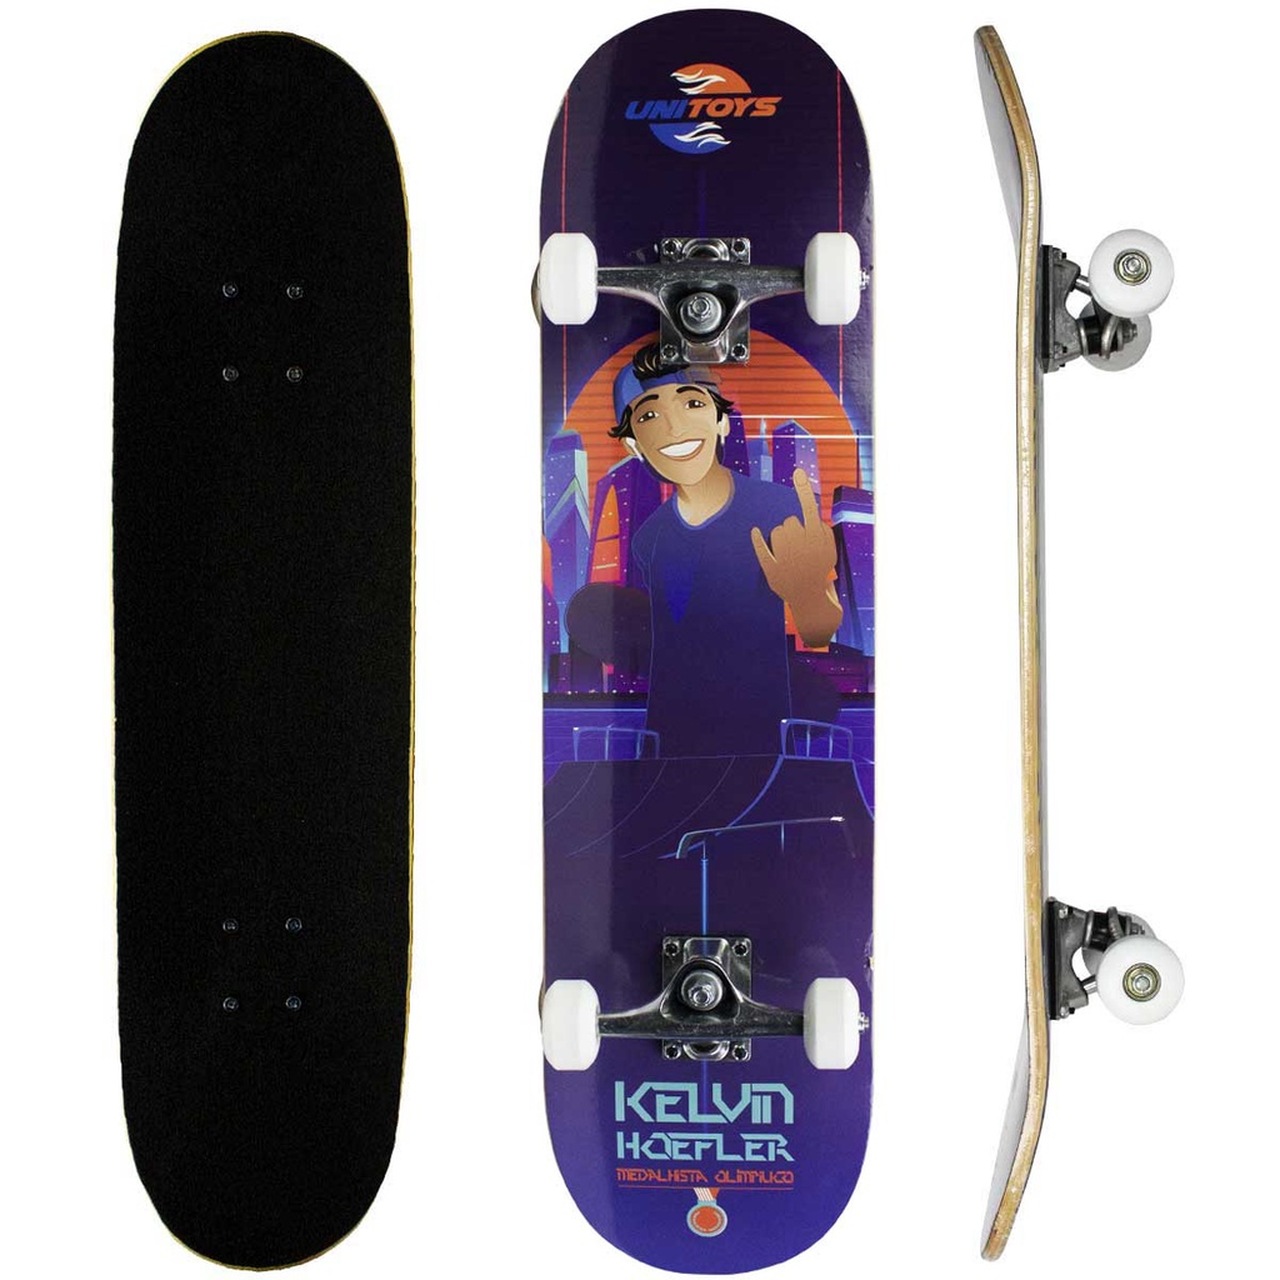 Kit Skate Kelvin Hoefler Semi Pro + Kit de Proteção UniToys